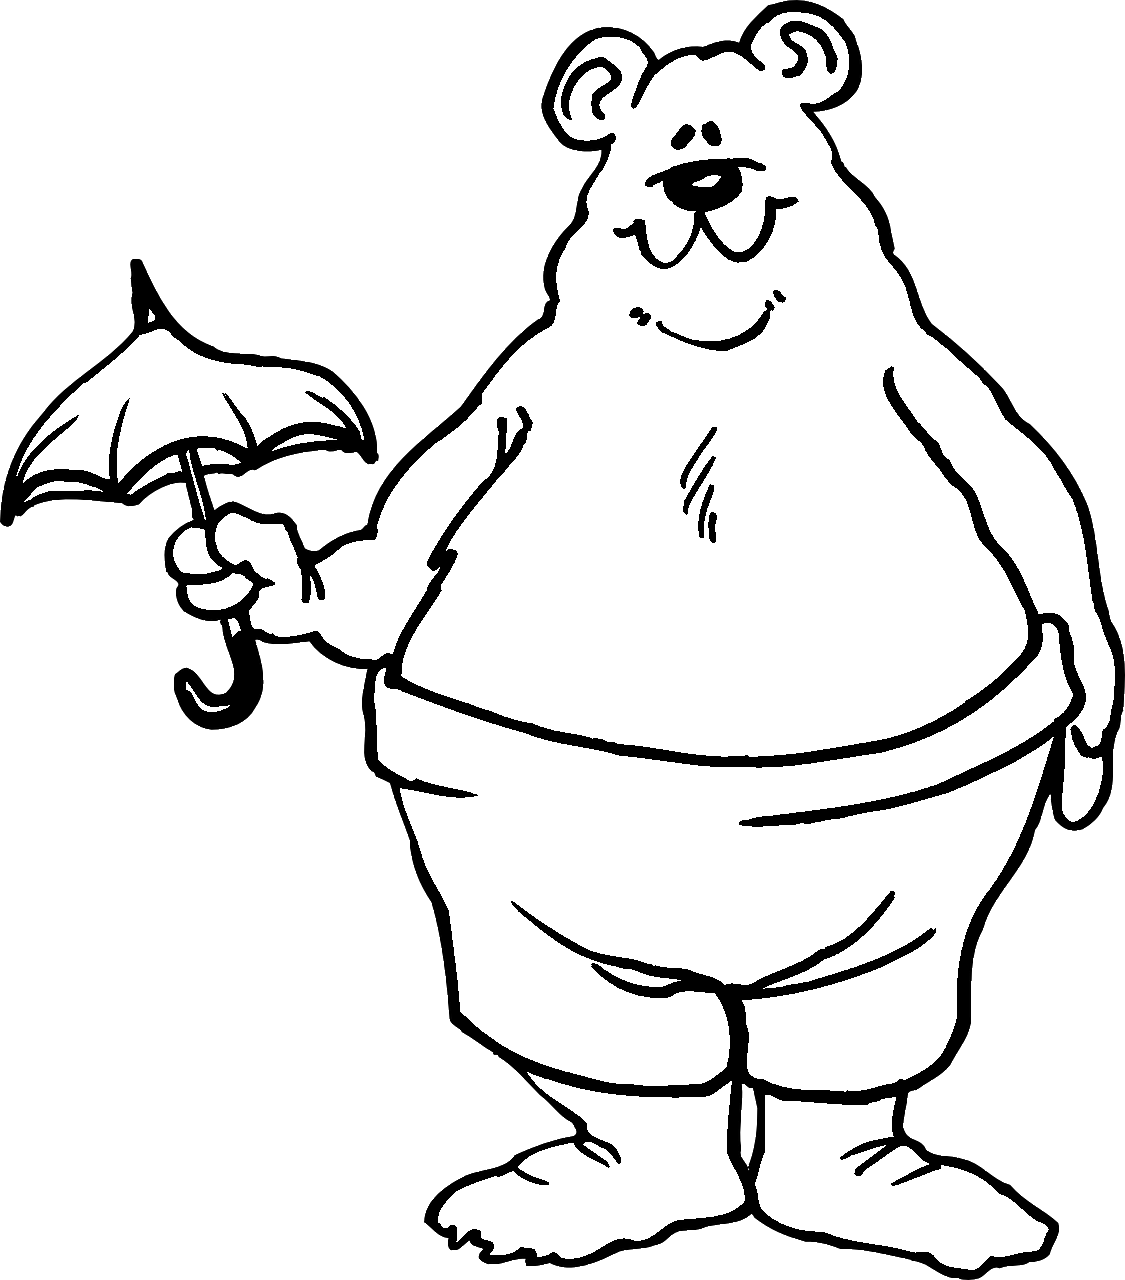 Disegno da colorare di orso con un piccolo ombrello